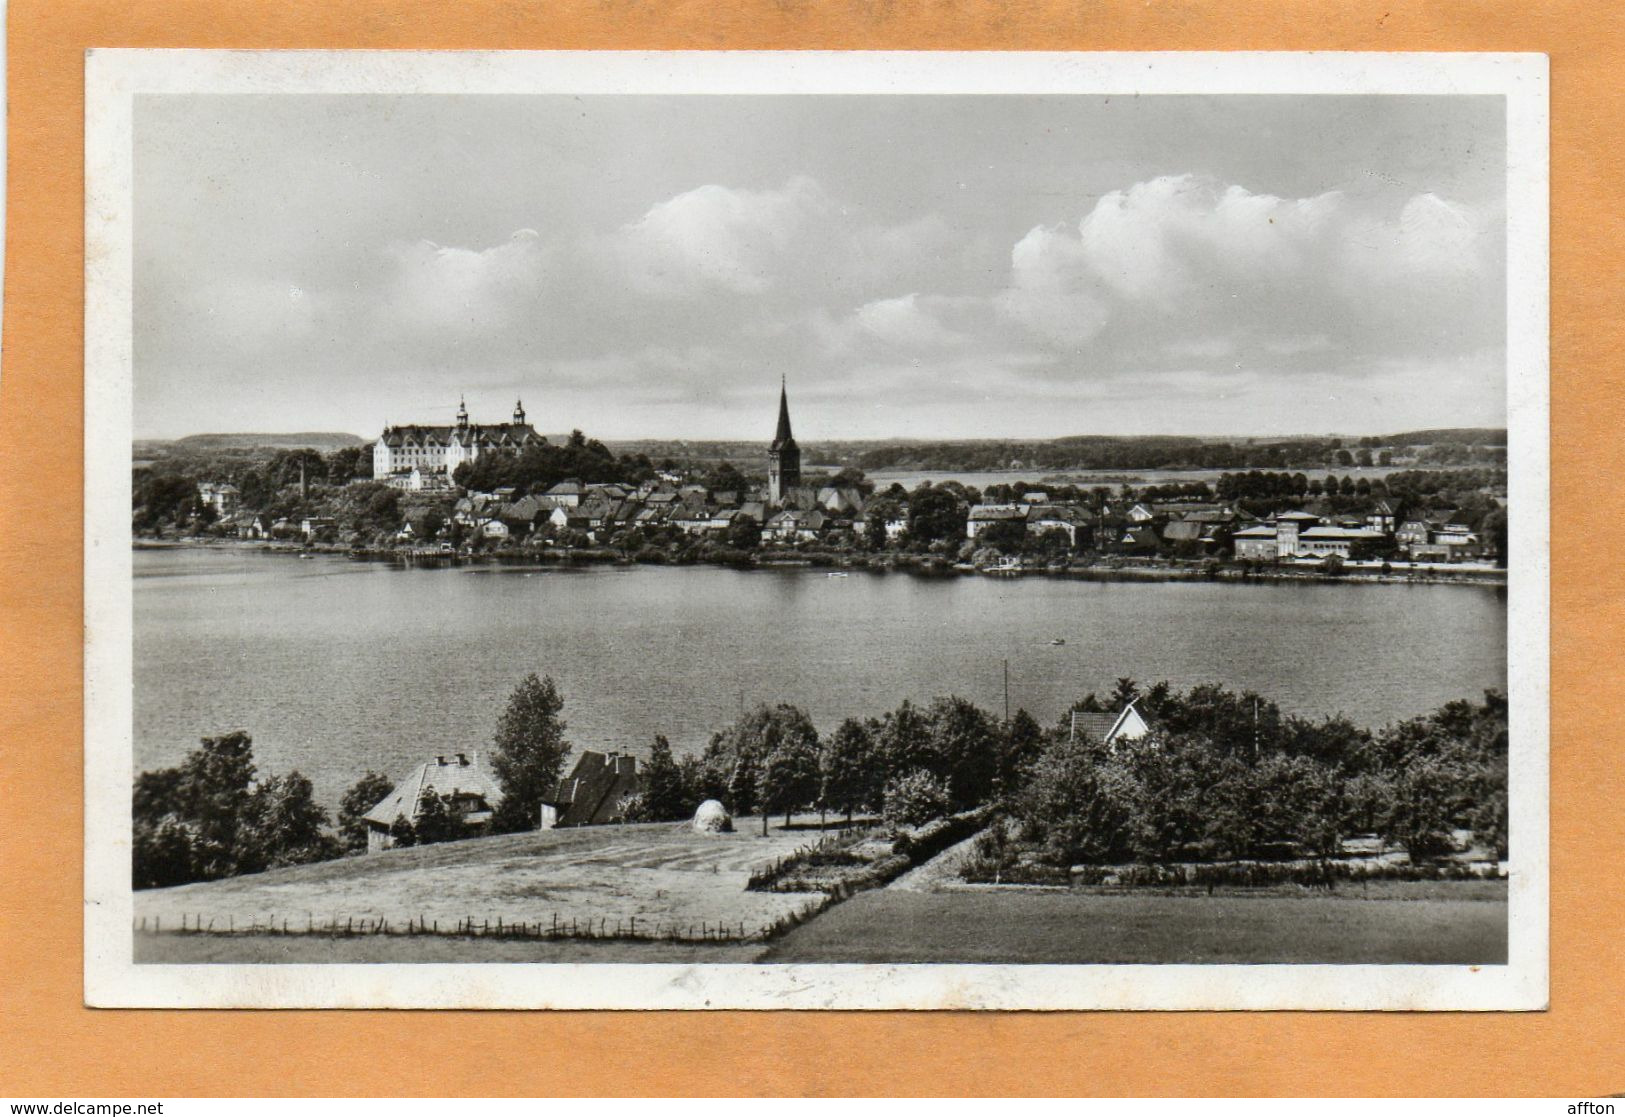 Plon Germany 1940 Postcard - Ploen